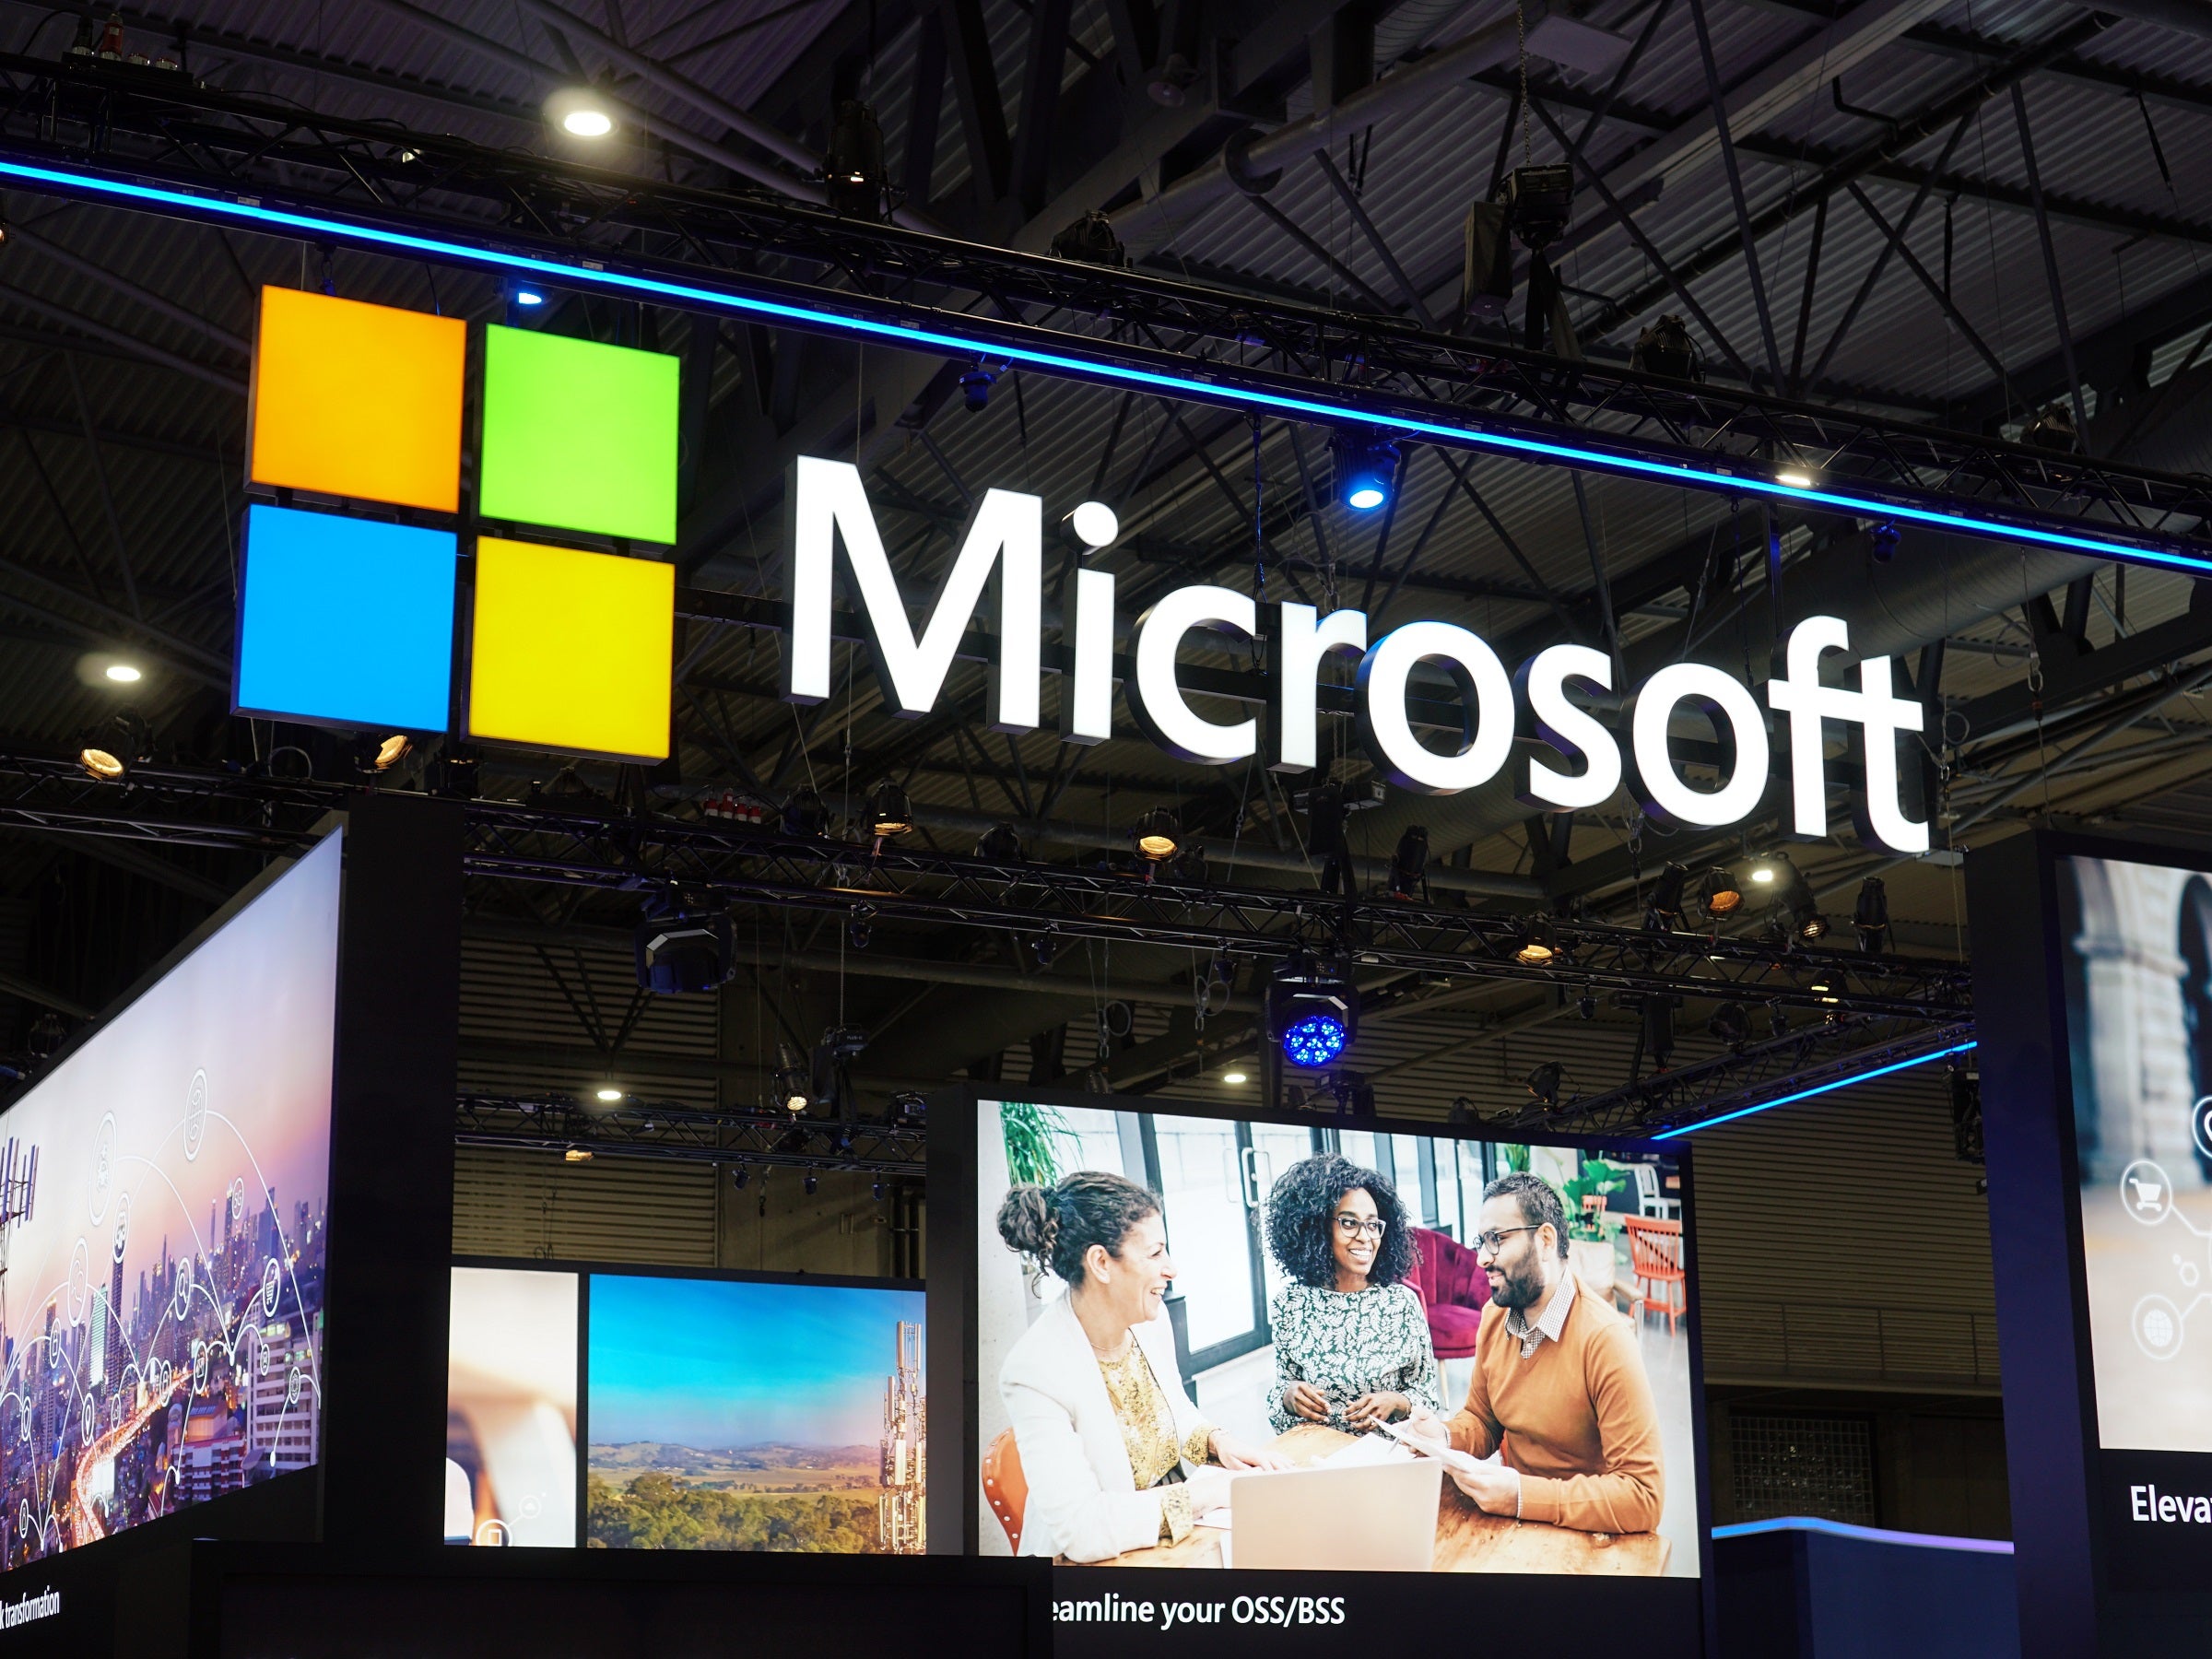 #Die große Wende: Microsoft, Windows, Xbox – alles wird auf den Kopf gestellt